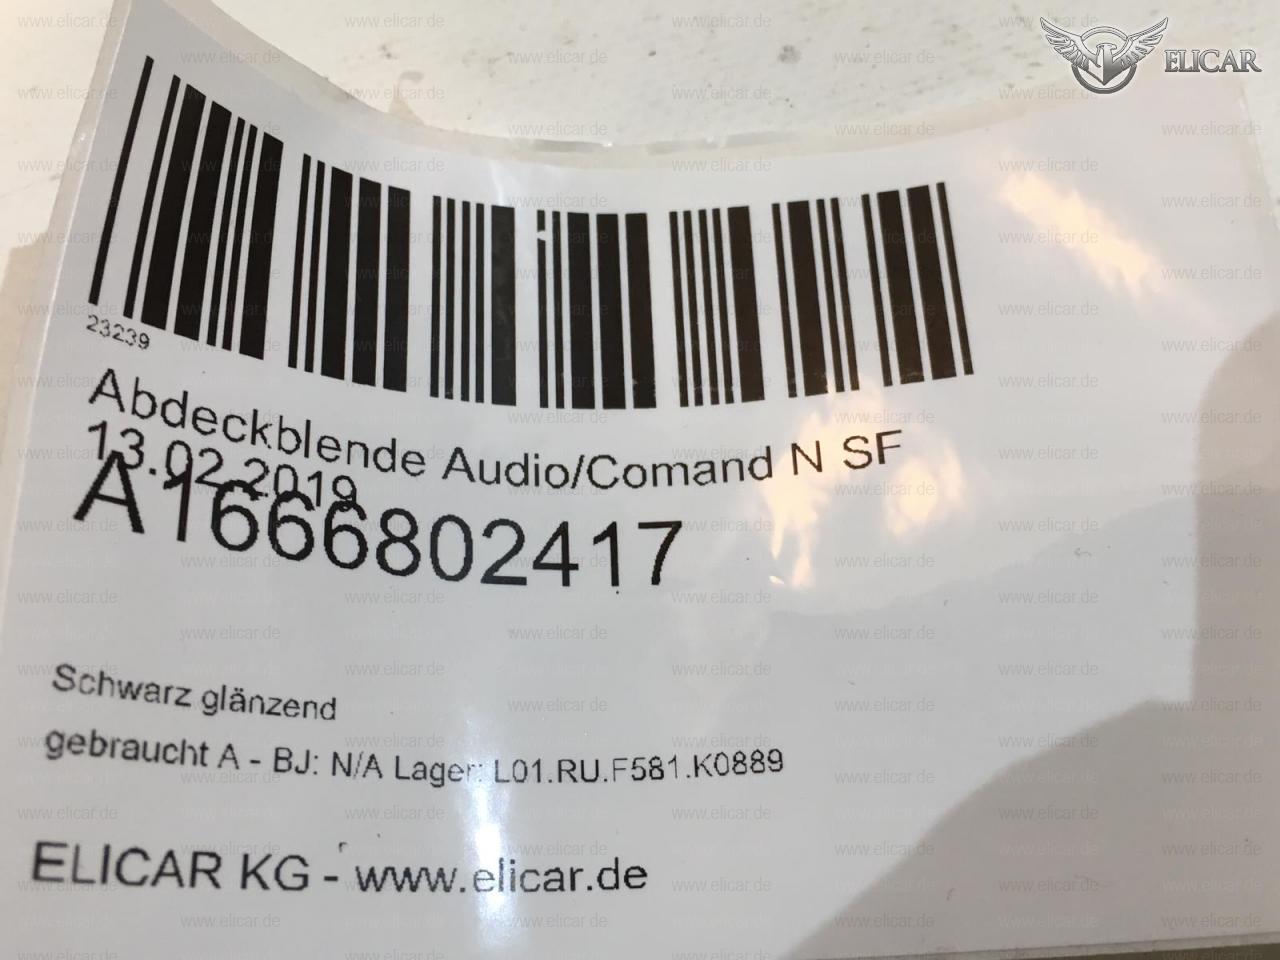 Abdeckblende Audio / Comand   für Mercedes-Benz 